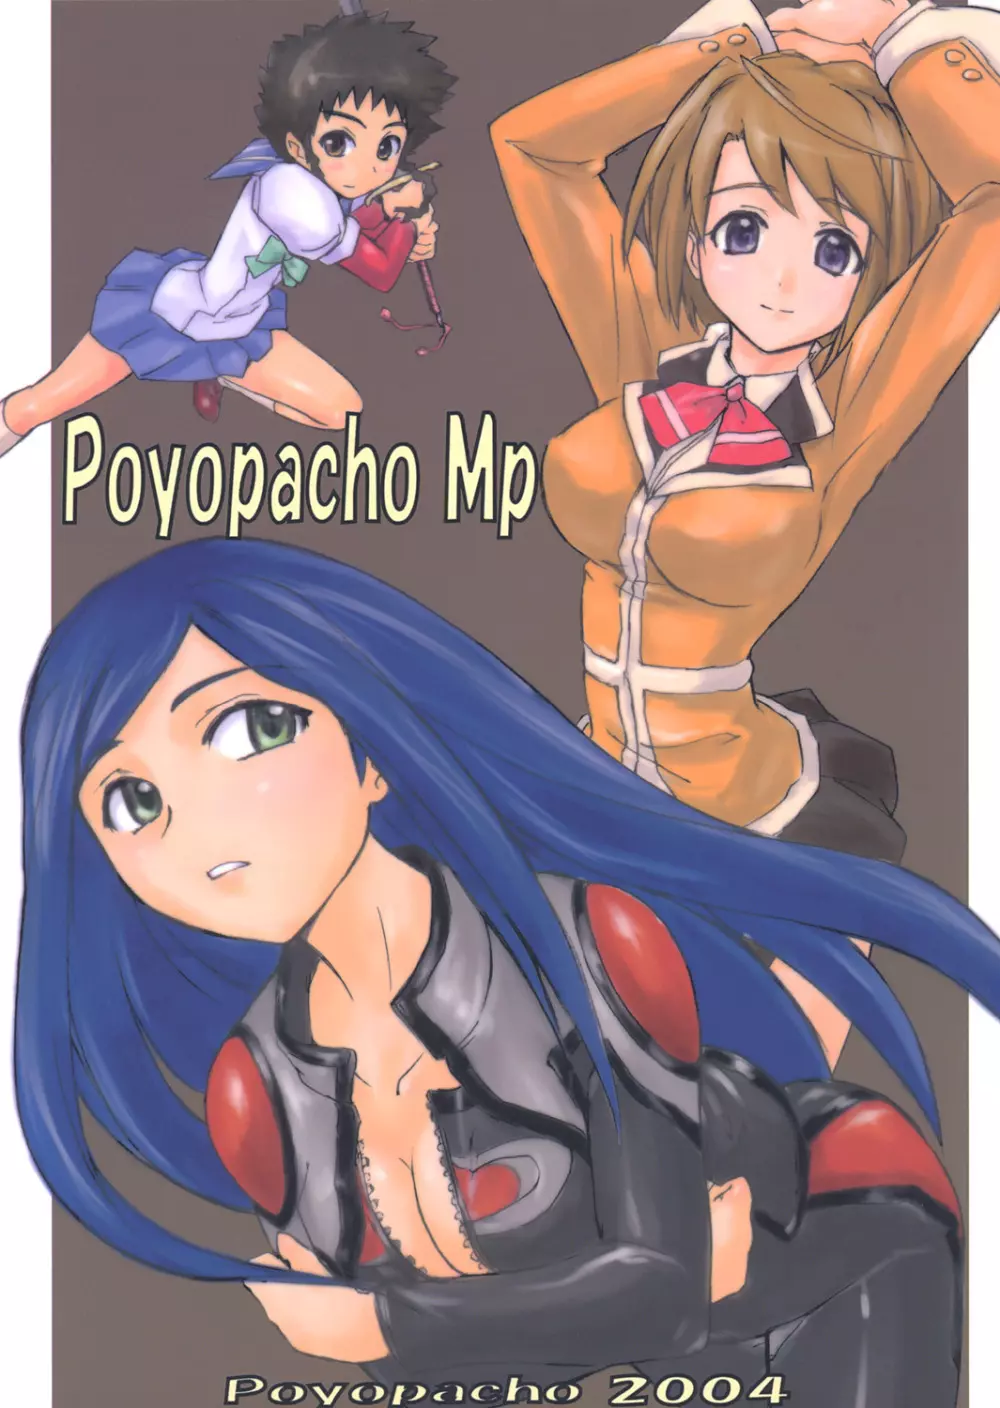 Poyopacho Mp - page1